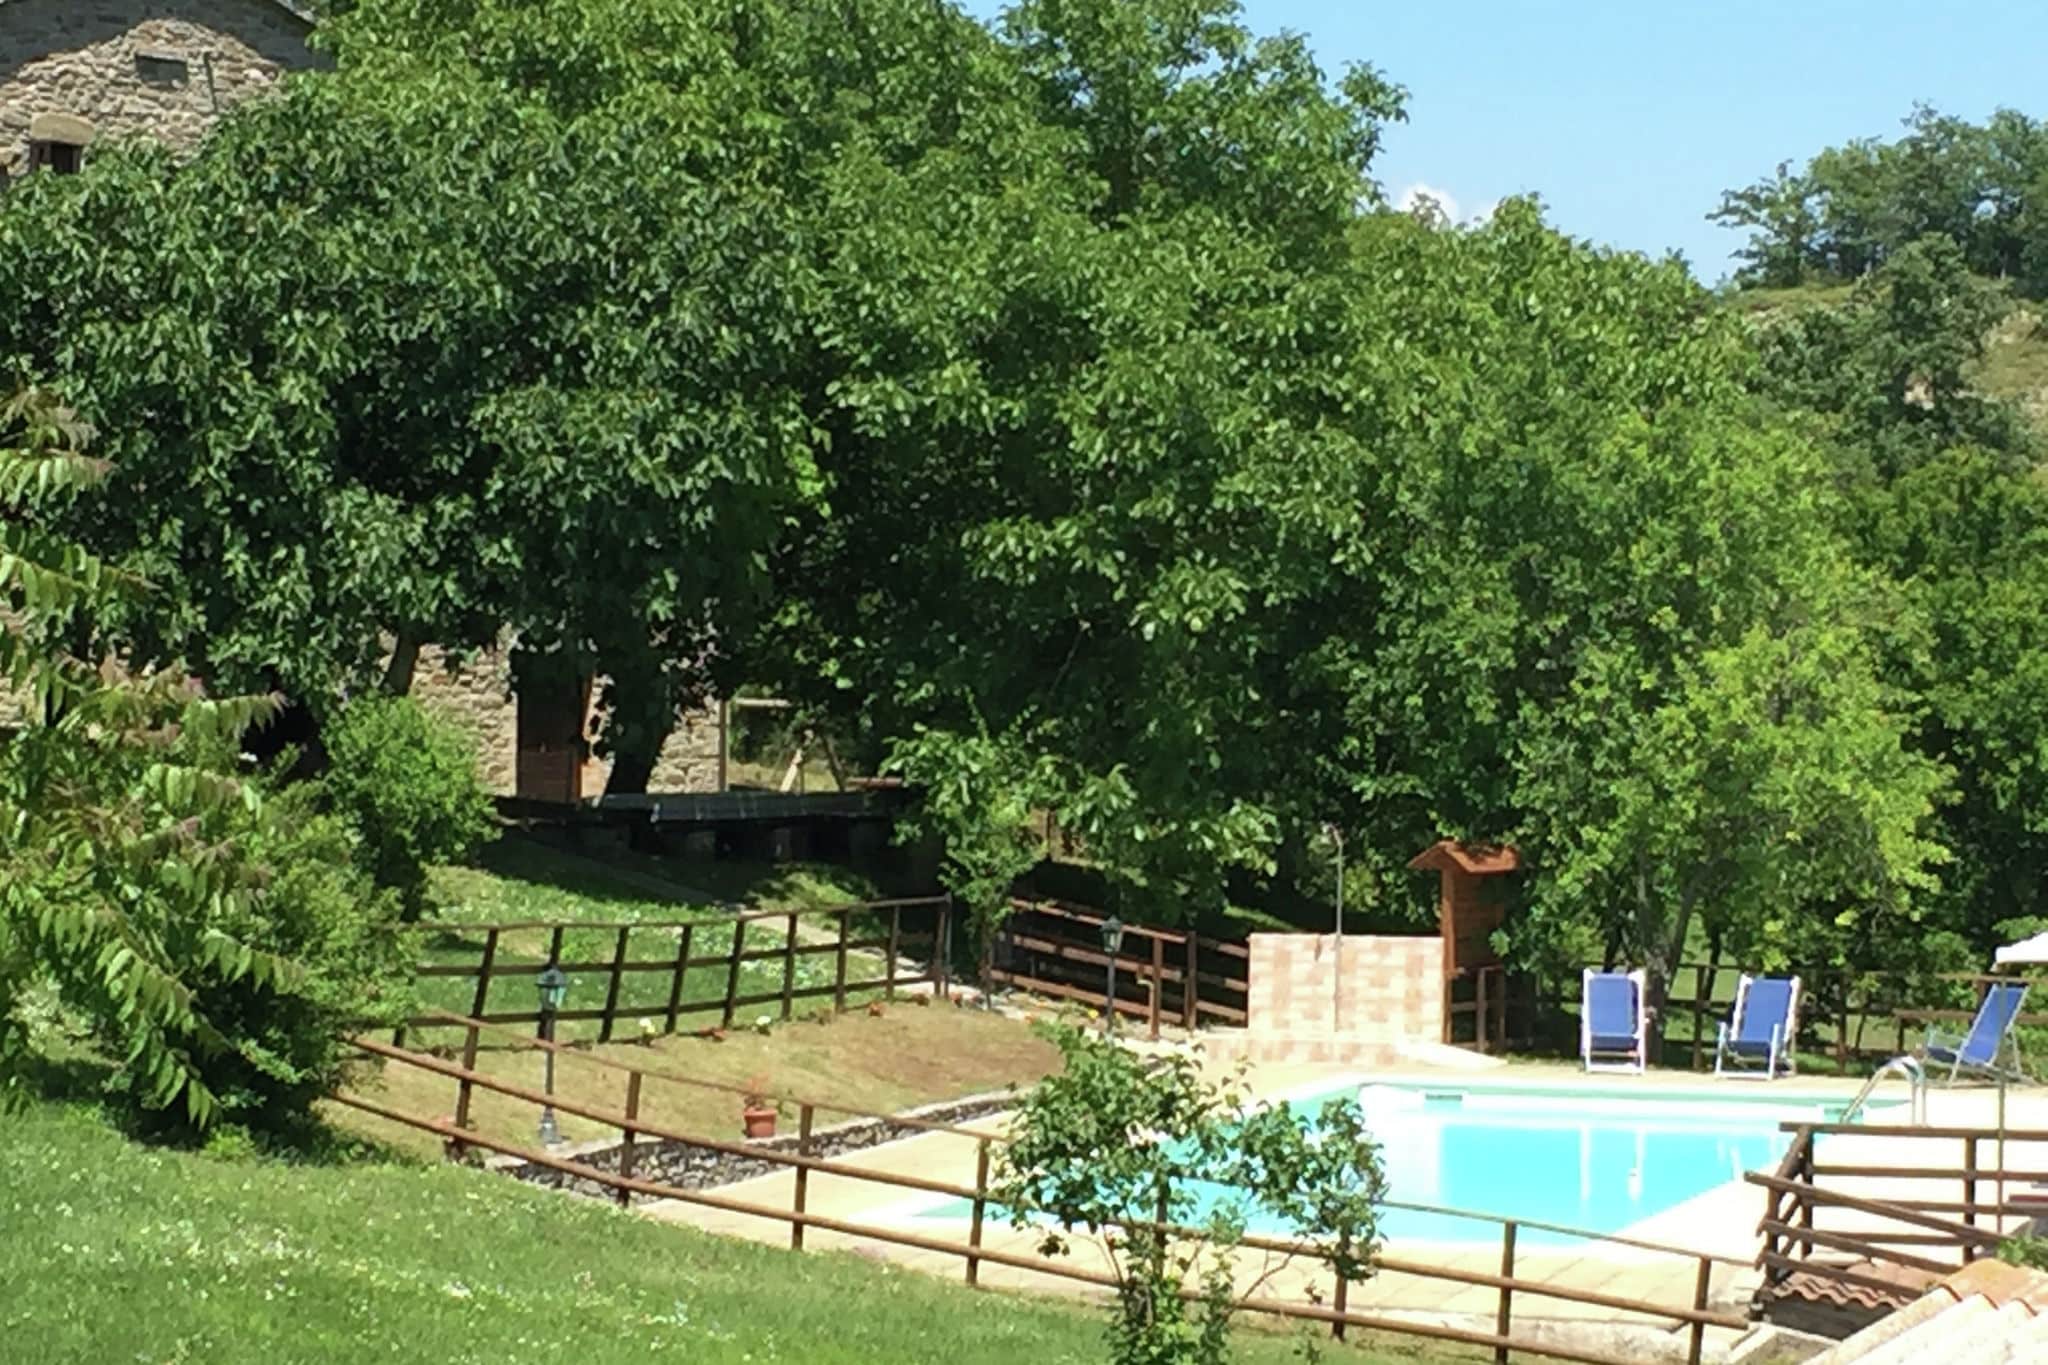 Bauernhaus in Apecchio mit Schwimmbad, Patio, Garten, Grillen